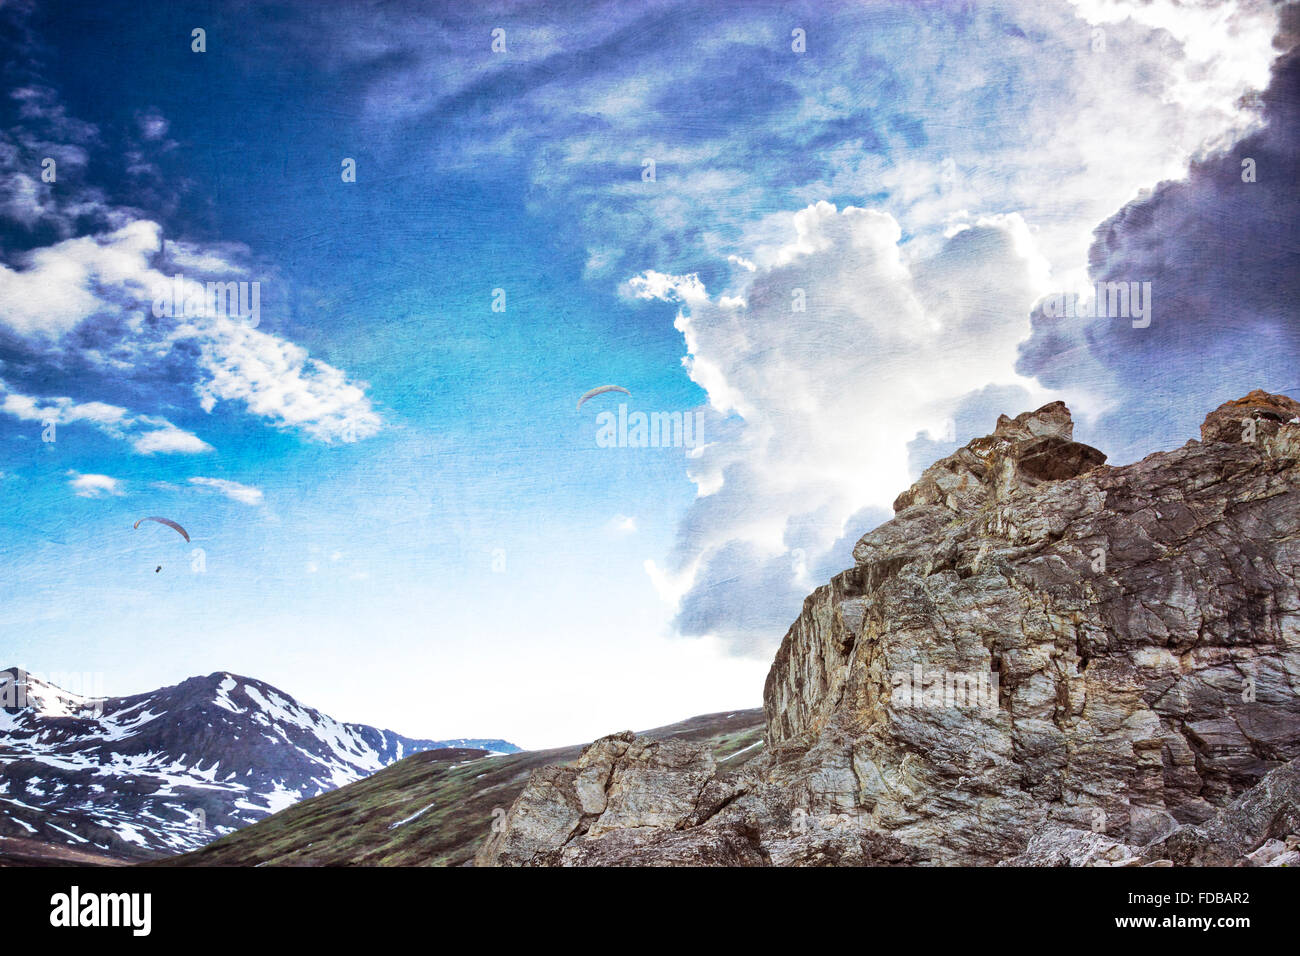 Deltaplano volare in nuvole drammatico al di sopra dei picchi di montagna con le texture aggiunto per un look di fantasia. Foto Stock